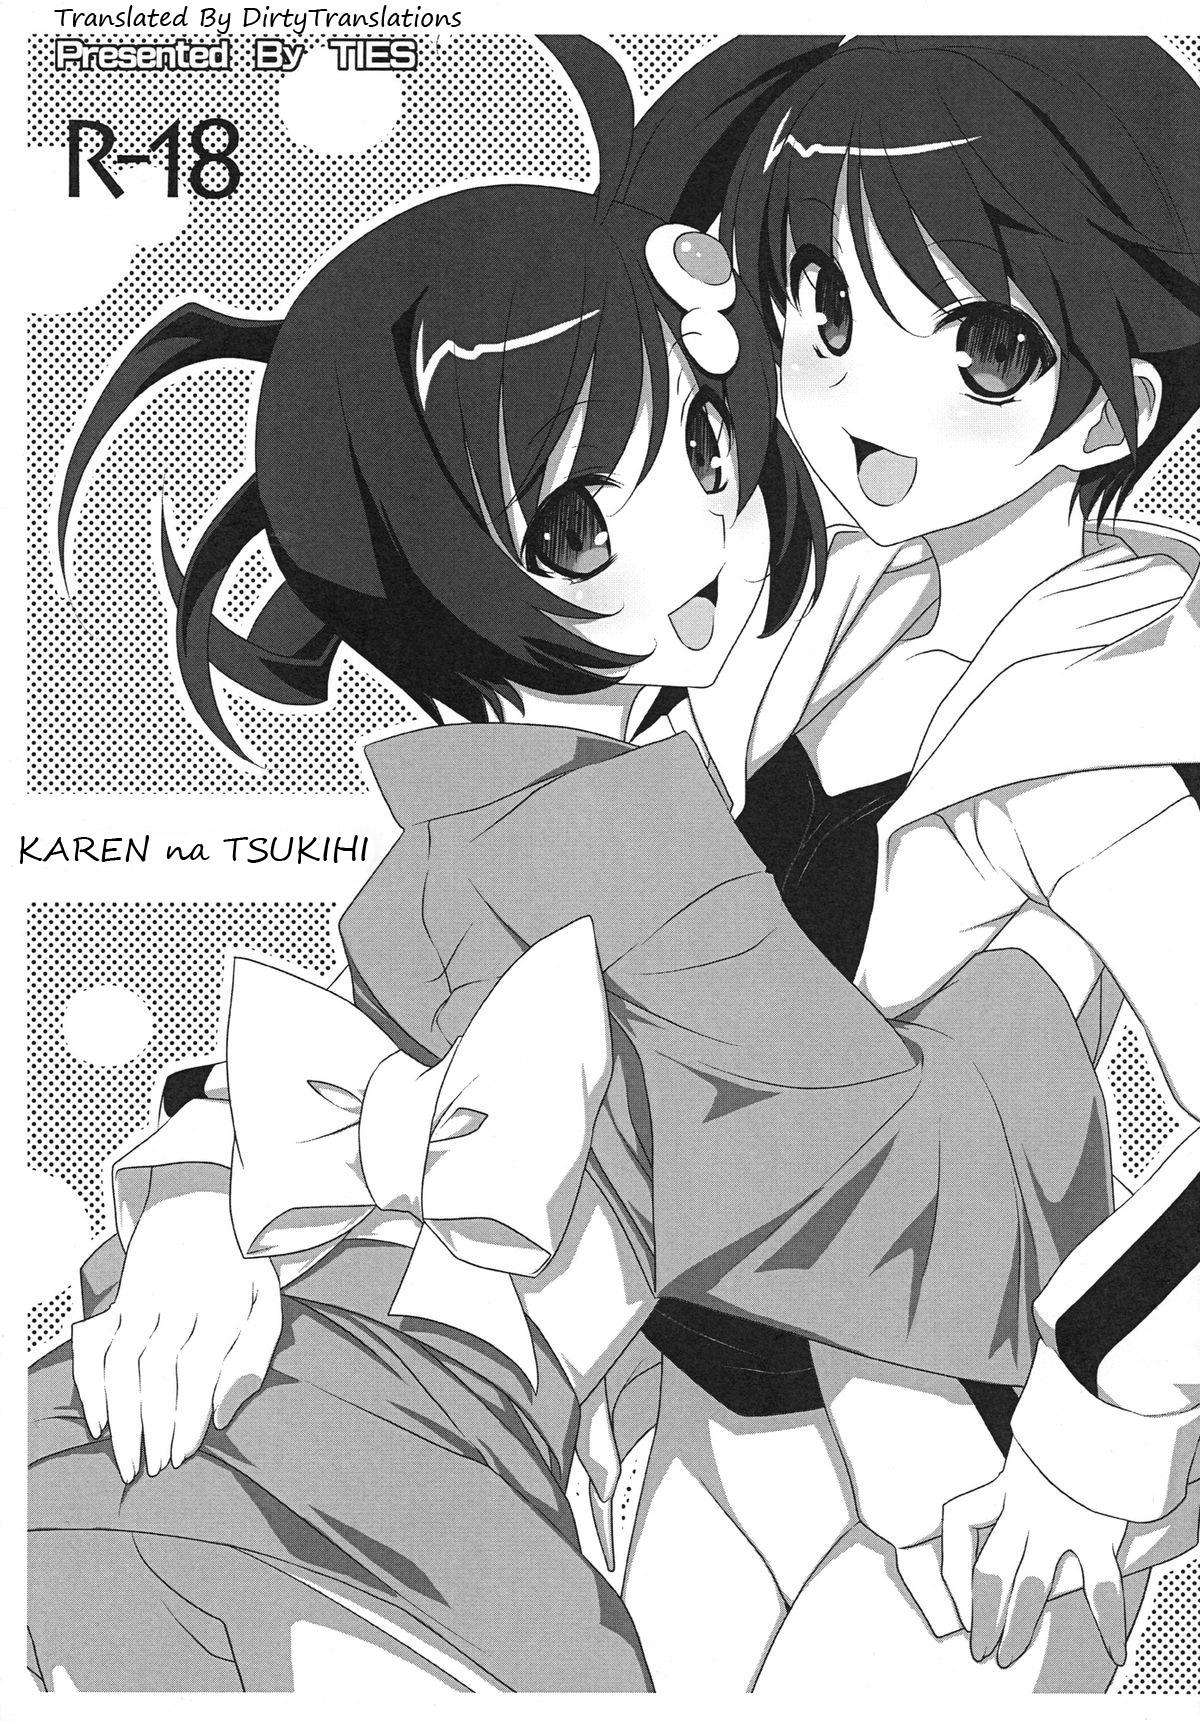 Karen na Tsukihi 1